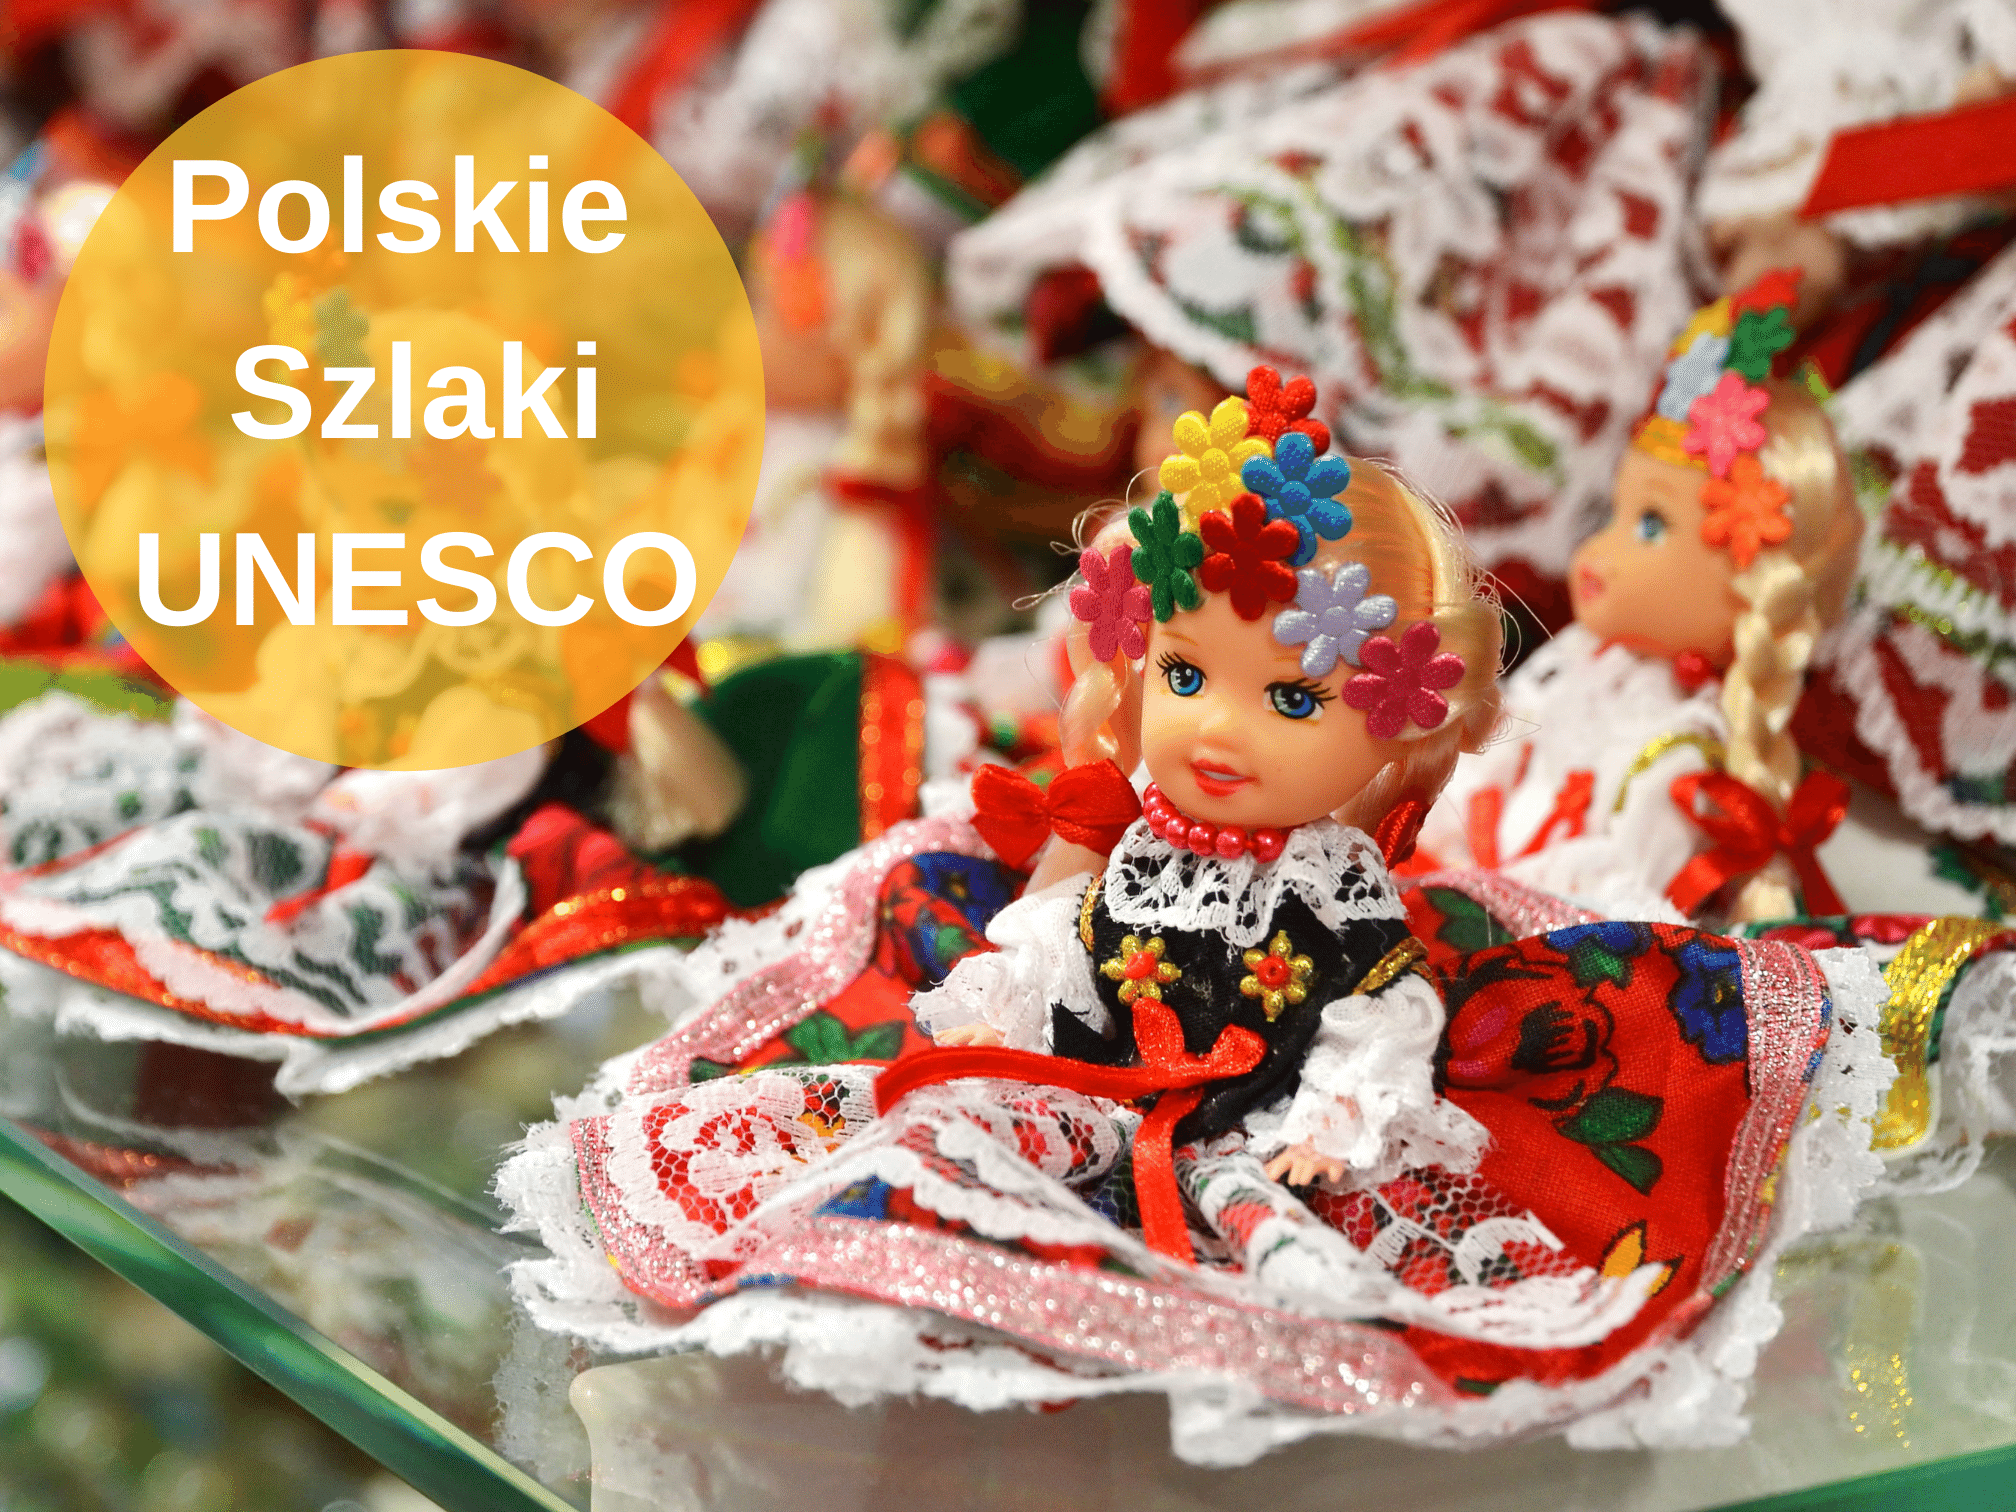 Polskie Szlaki UNESCO - Polskie Szlaki UNESCO